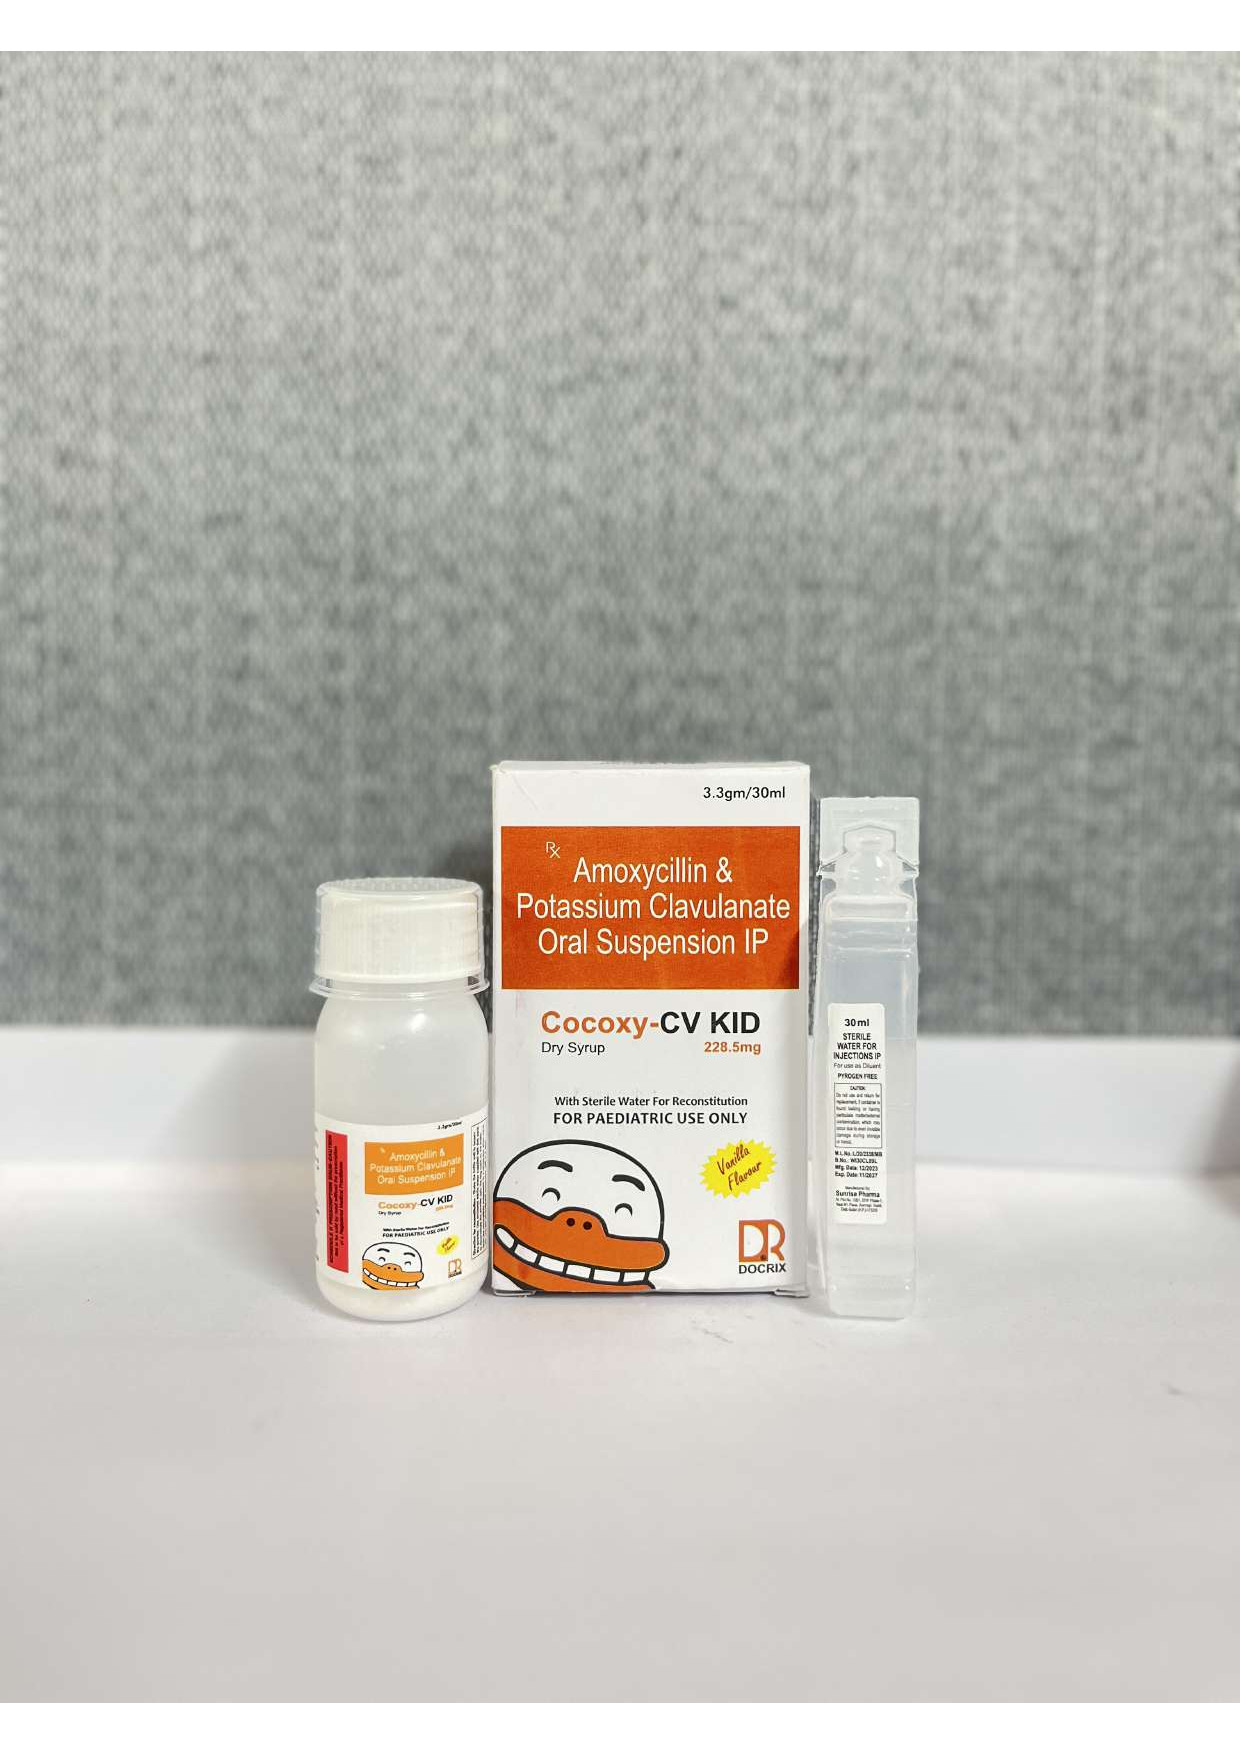 Product Name: Cocoxy CV KID, Compositions of Cocoxy CV KID are Amoxycilin & Potassium Clavulanate Oral Suspension IP - Docrix Healthcare